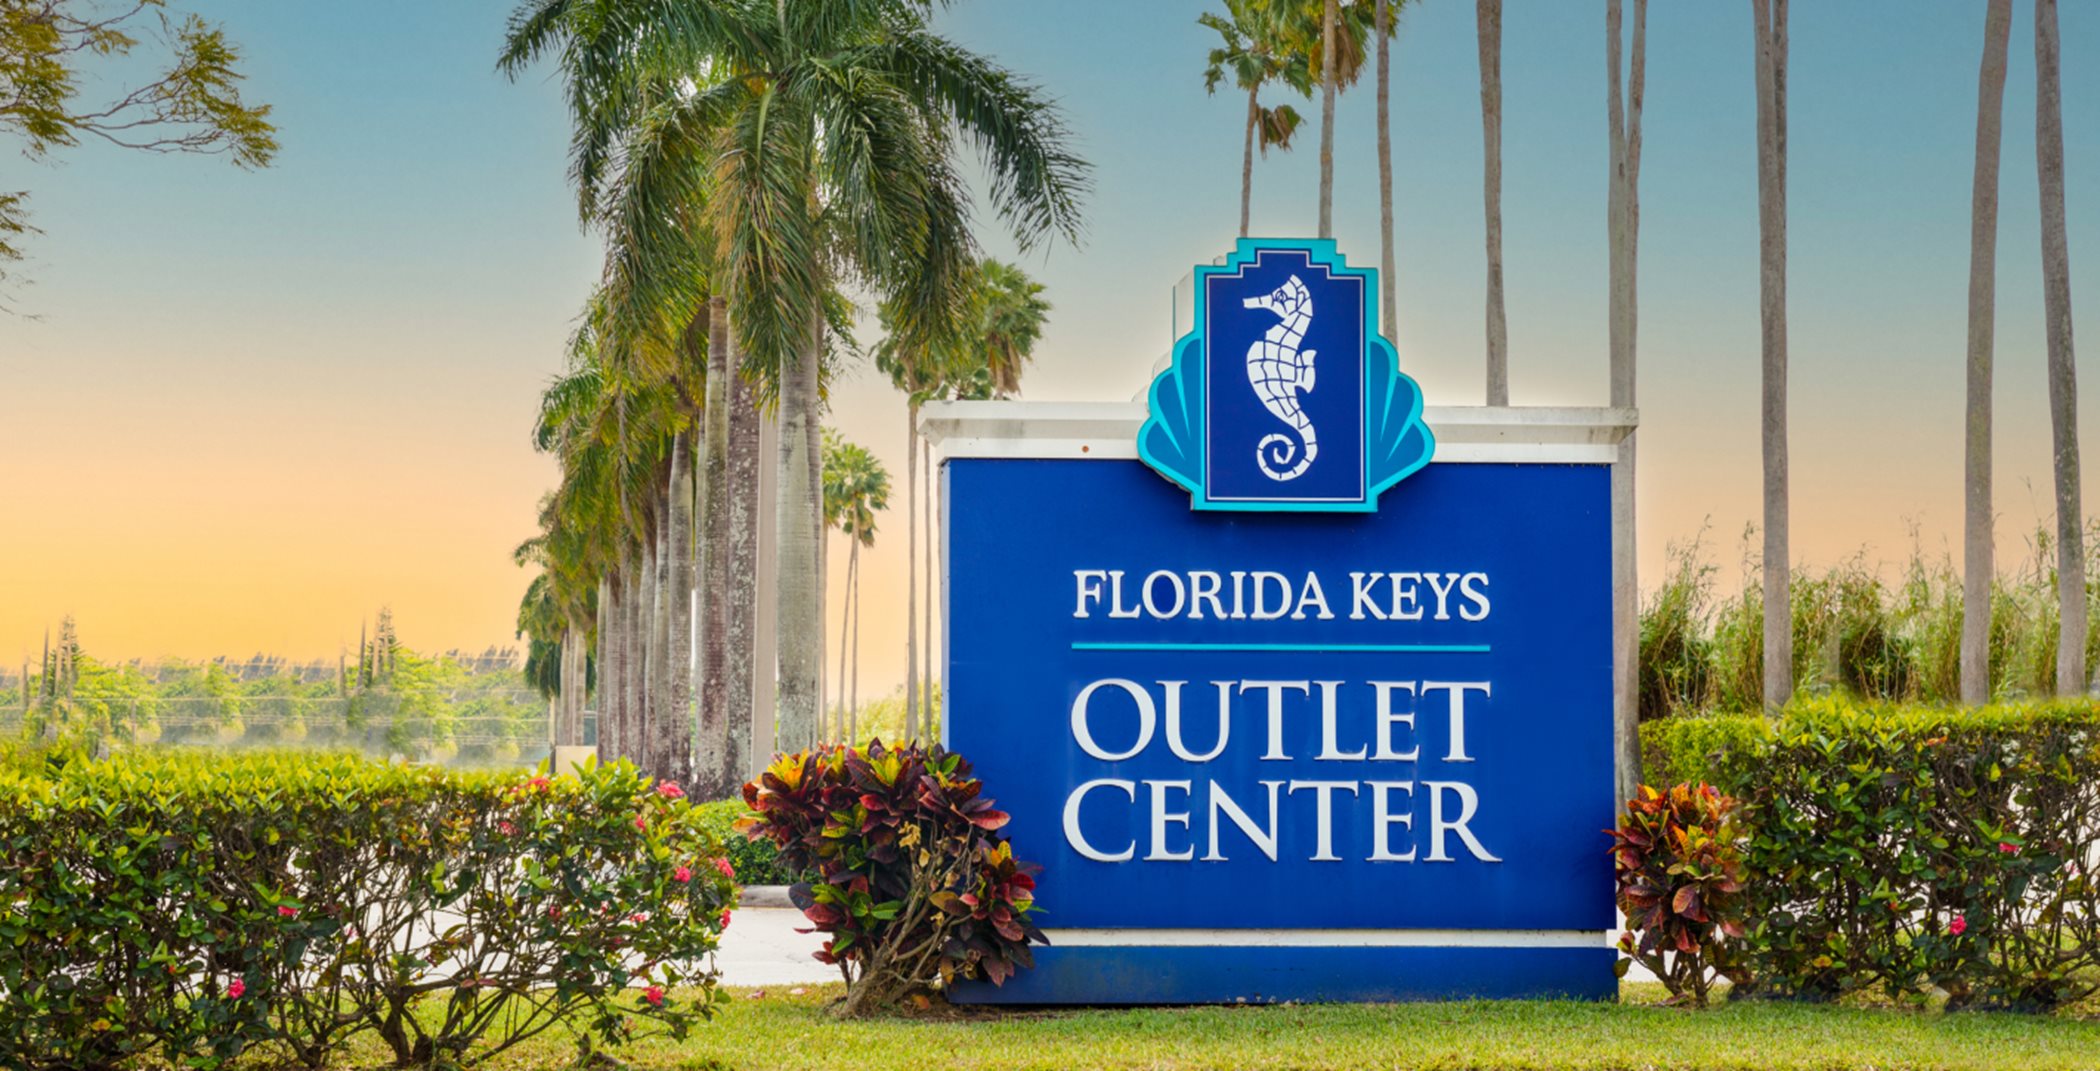 Florida Keys outlet center sign